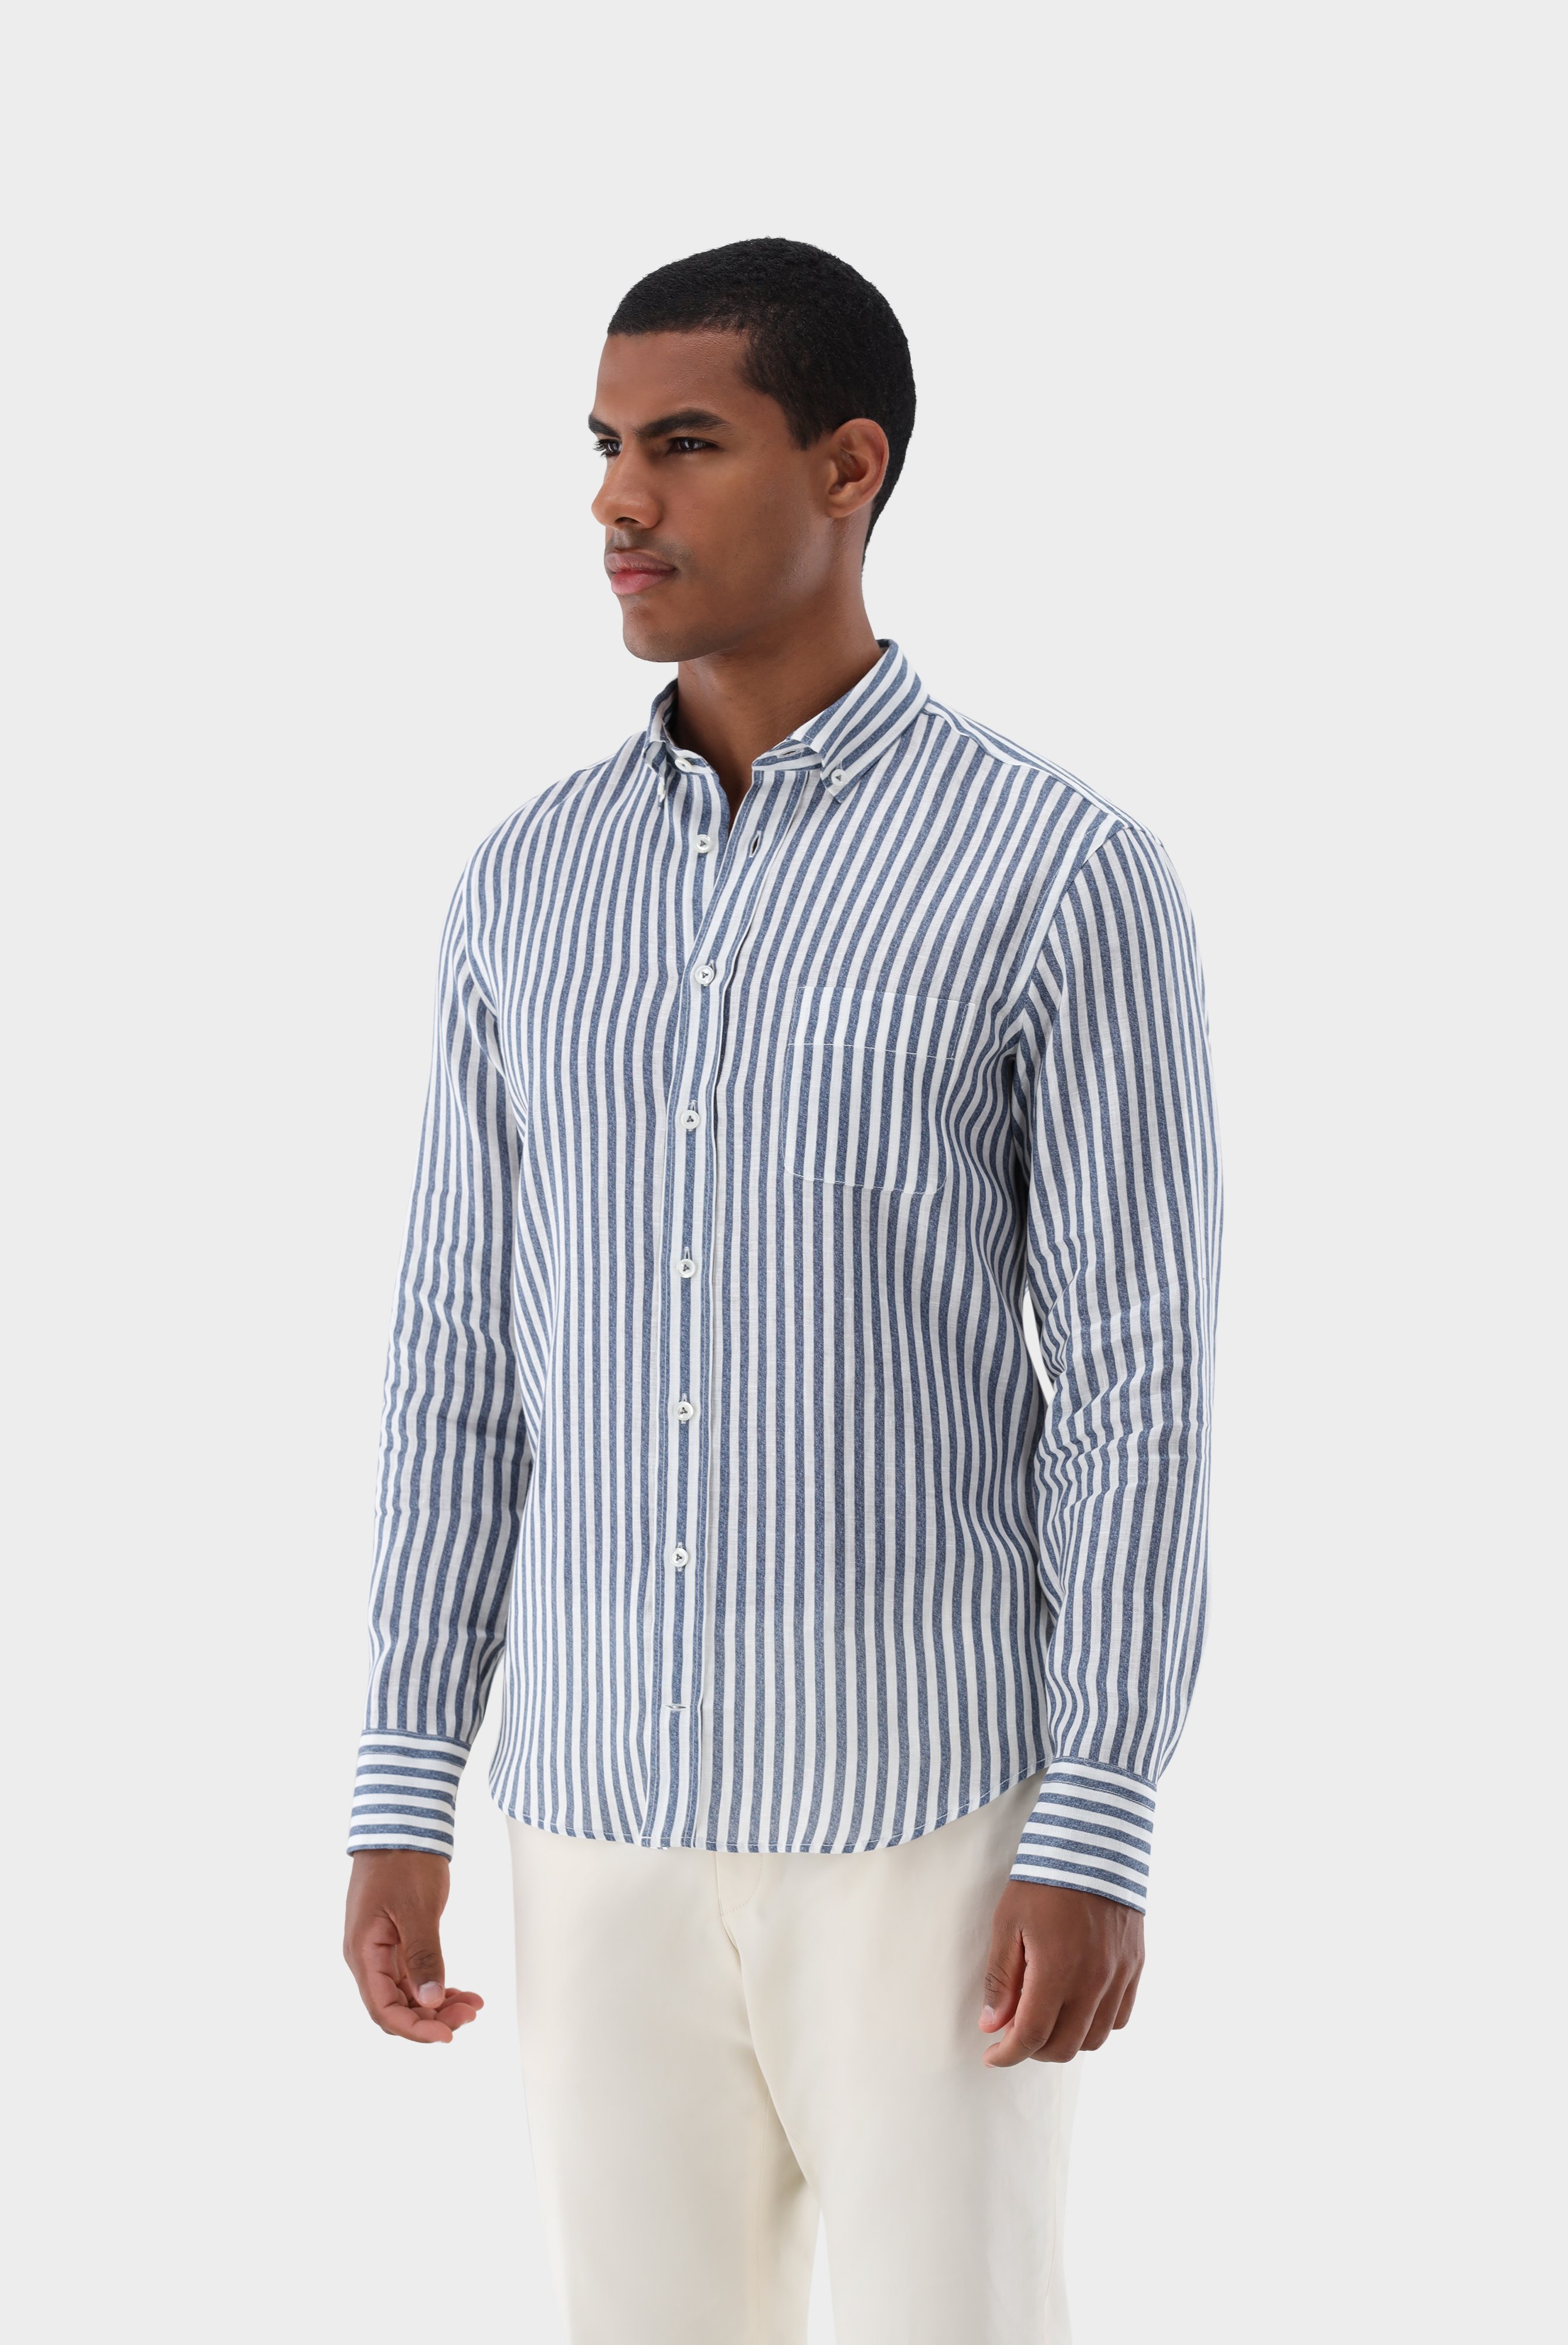 Casual Hemden+Leinenhemd mit Streifen-Druck Tailor Fit+20.2013.9V.170352.780.39